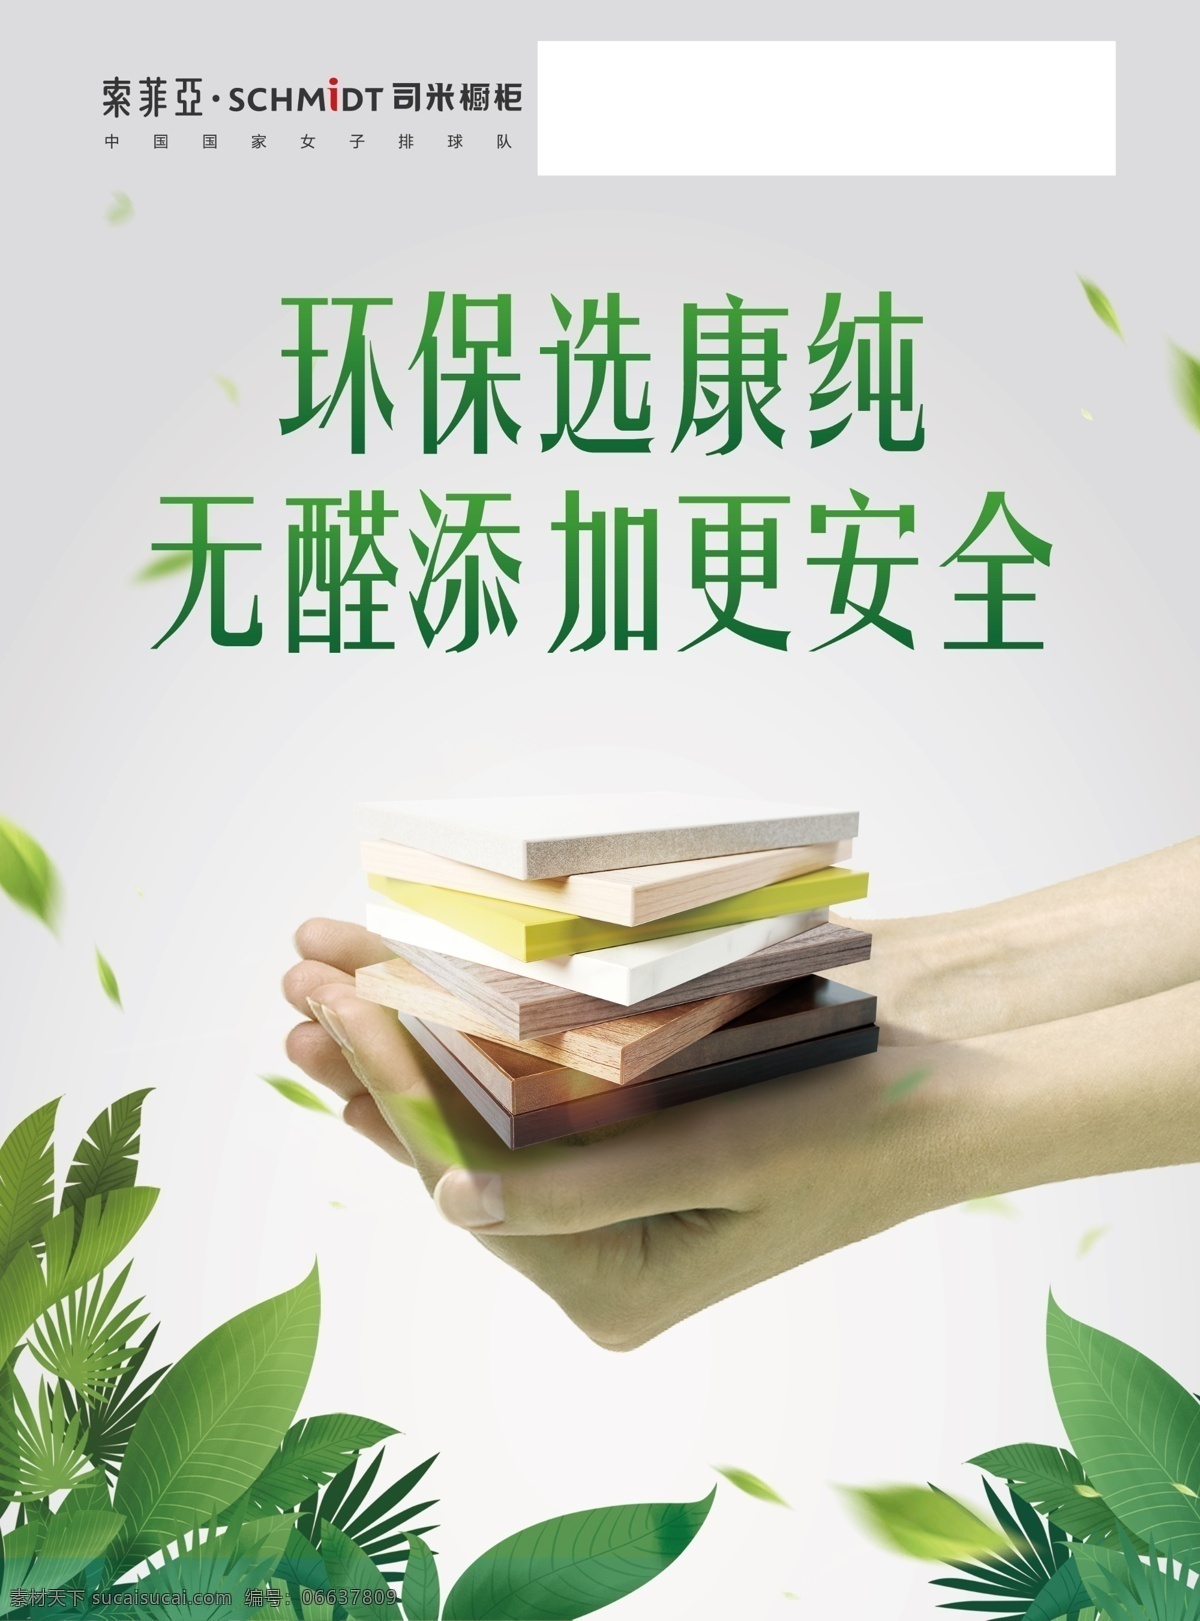 索菲亚图片 索菲亚 标志 司米橱柜 康纯板 环保底图 绿叶 广告宣传